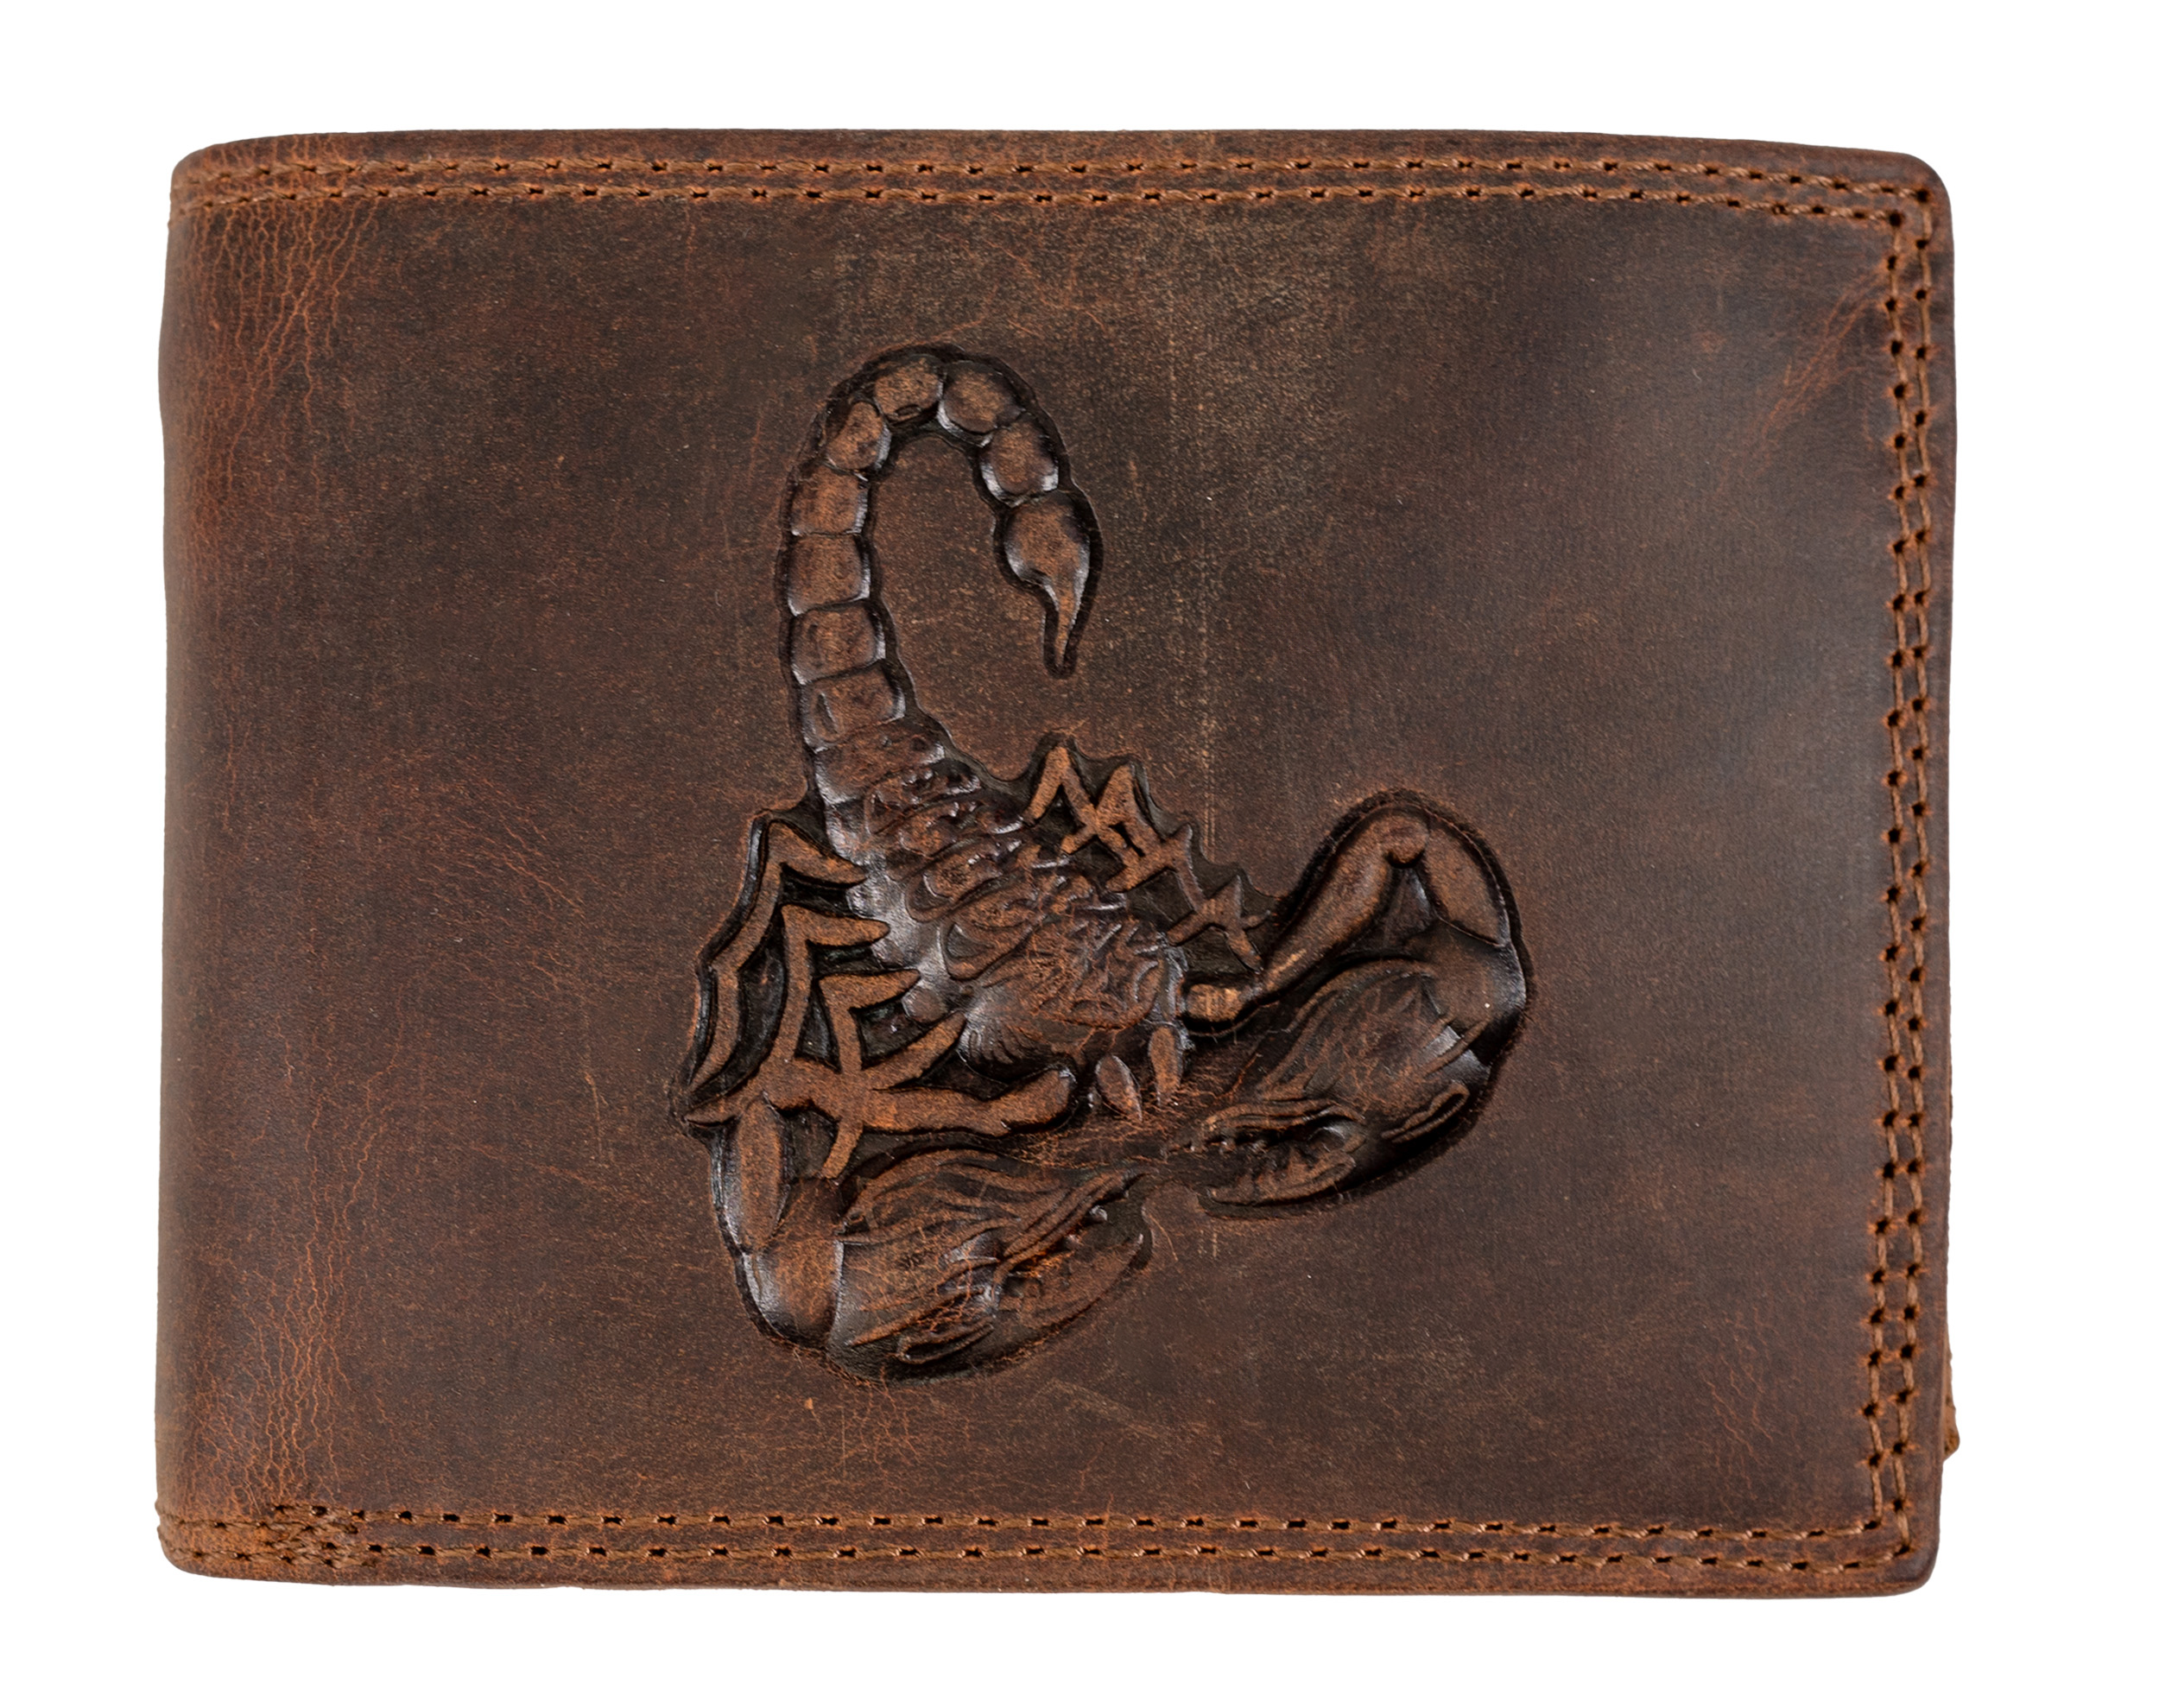 HL Luxusní kožená peněženka s 3D Štírem - hnědá